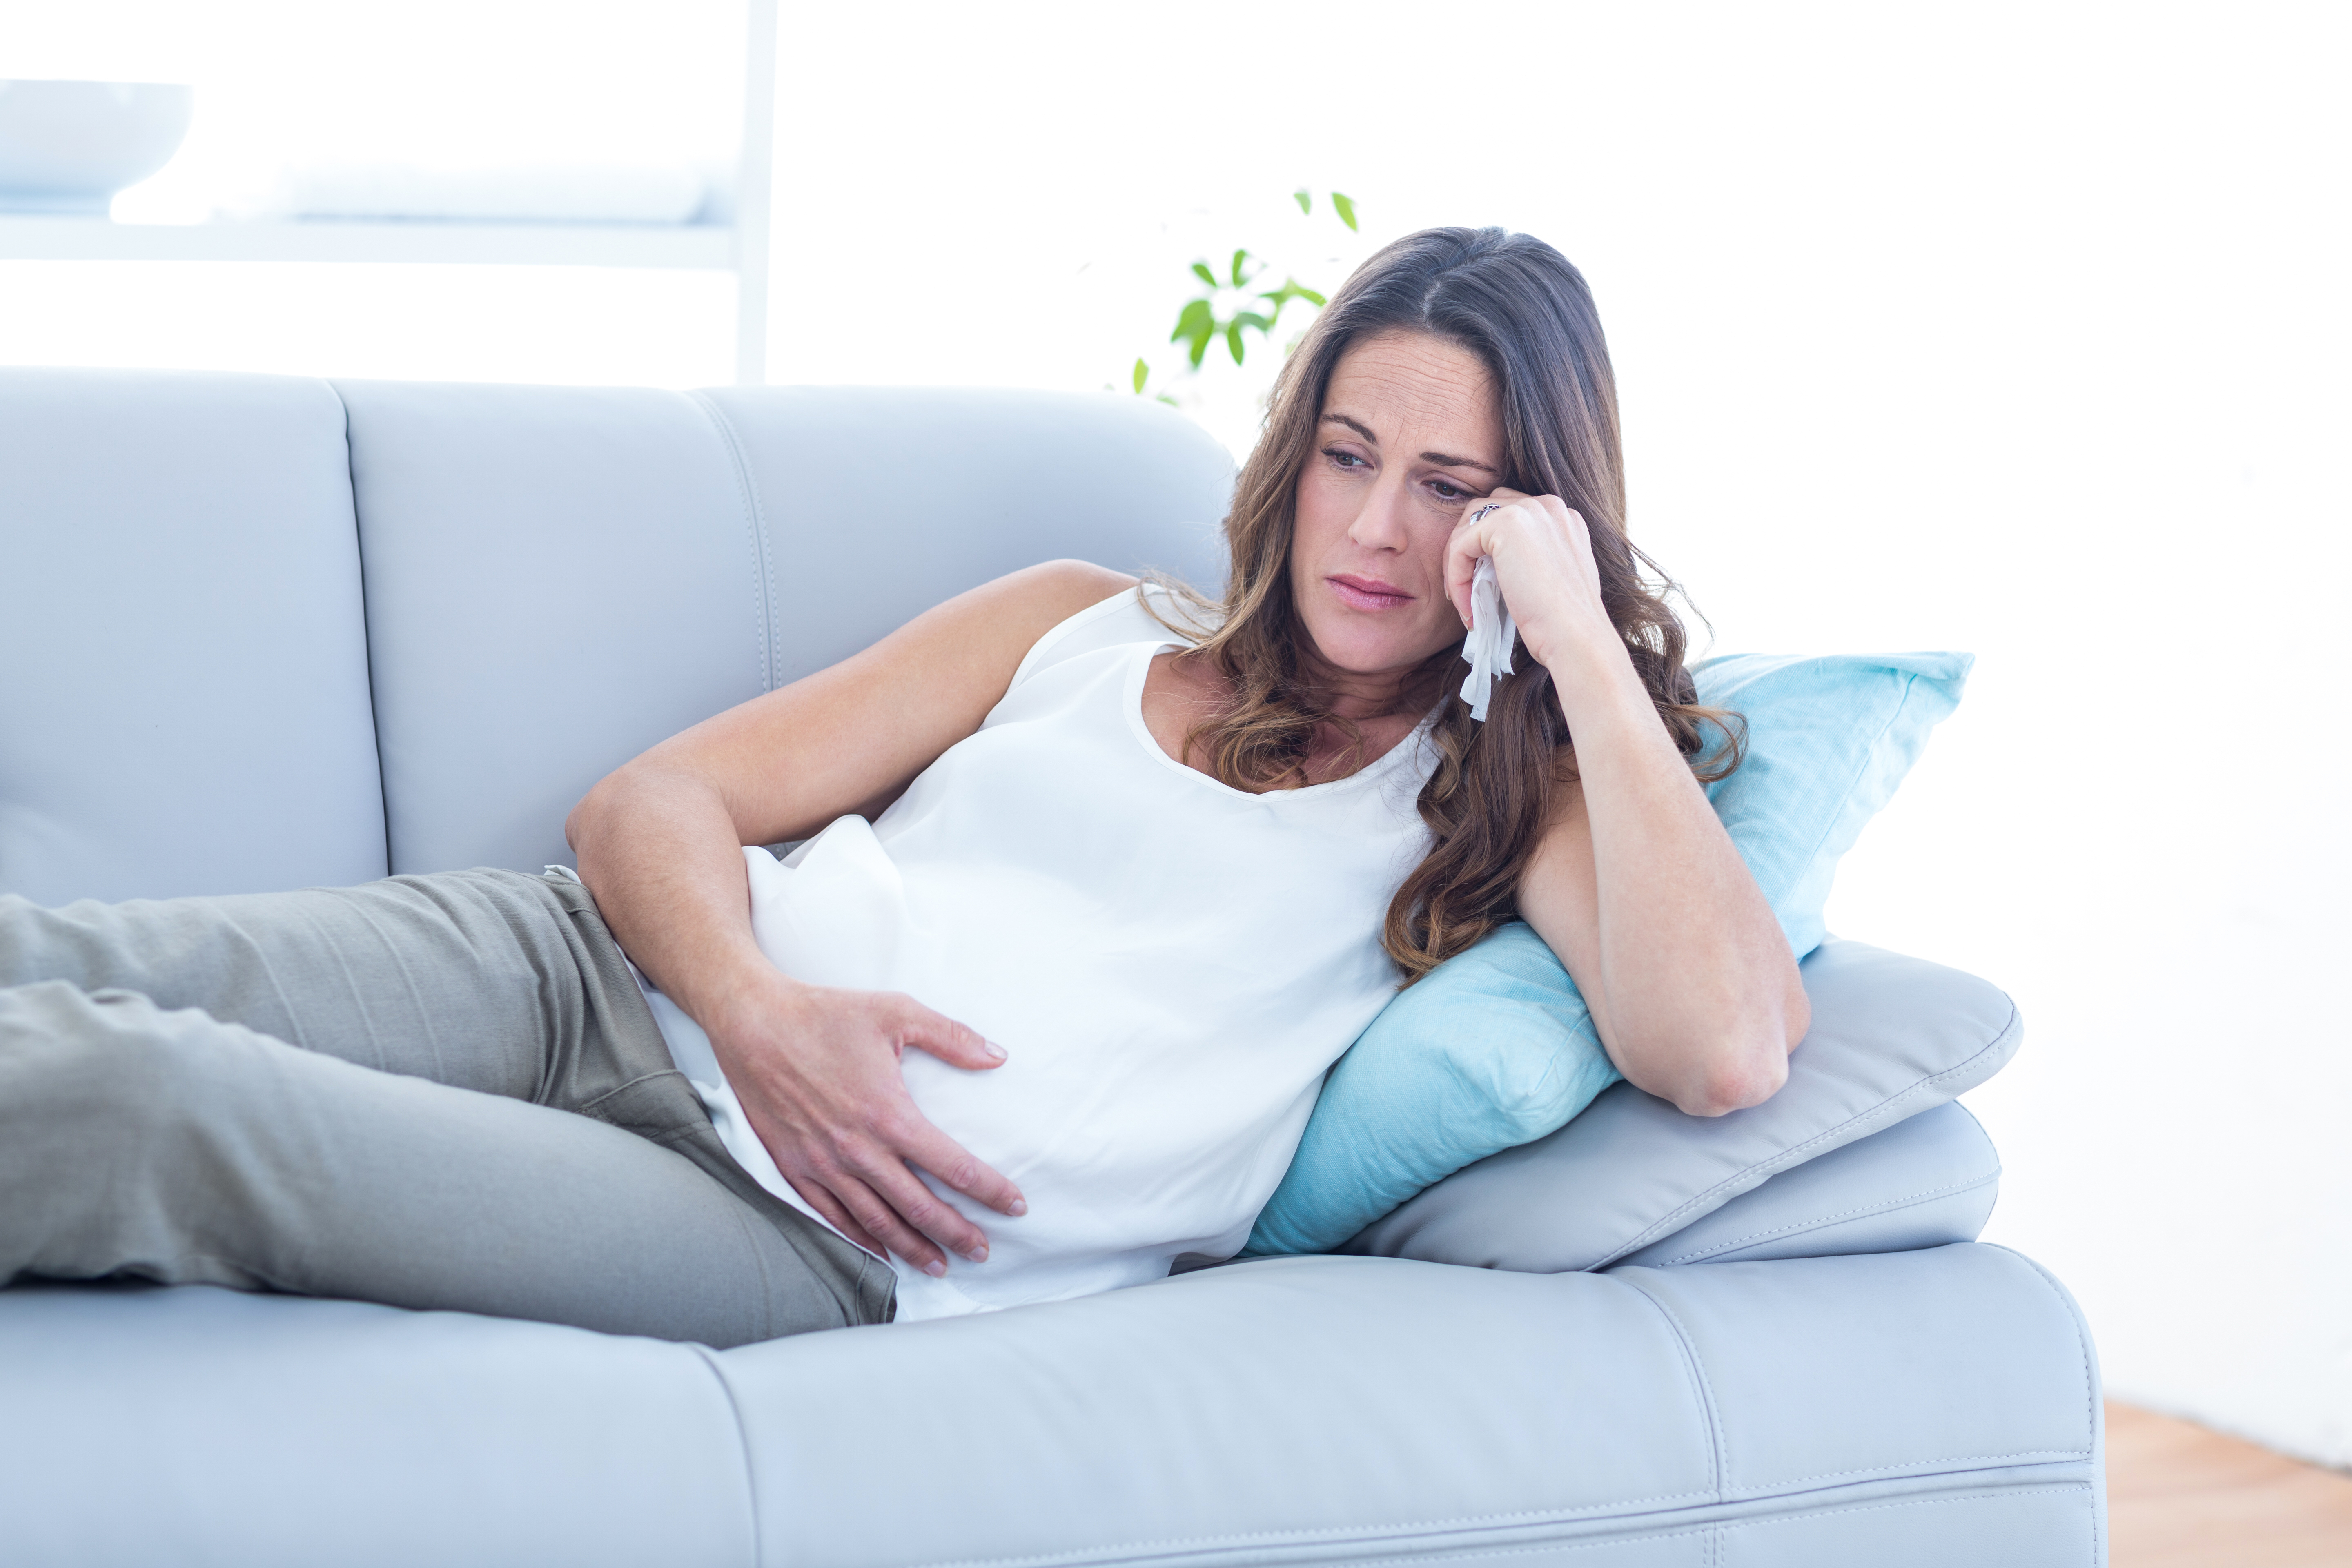 Eine schwangere Frau sitzt auf einer Couch und sieht traurig aus | Quelle: Shutterstock